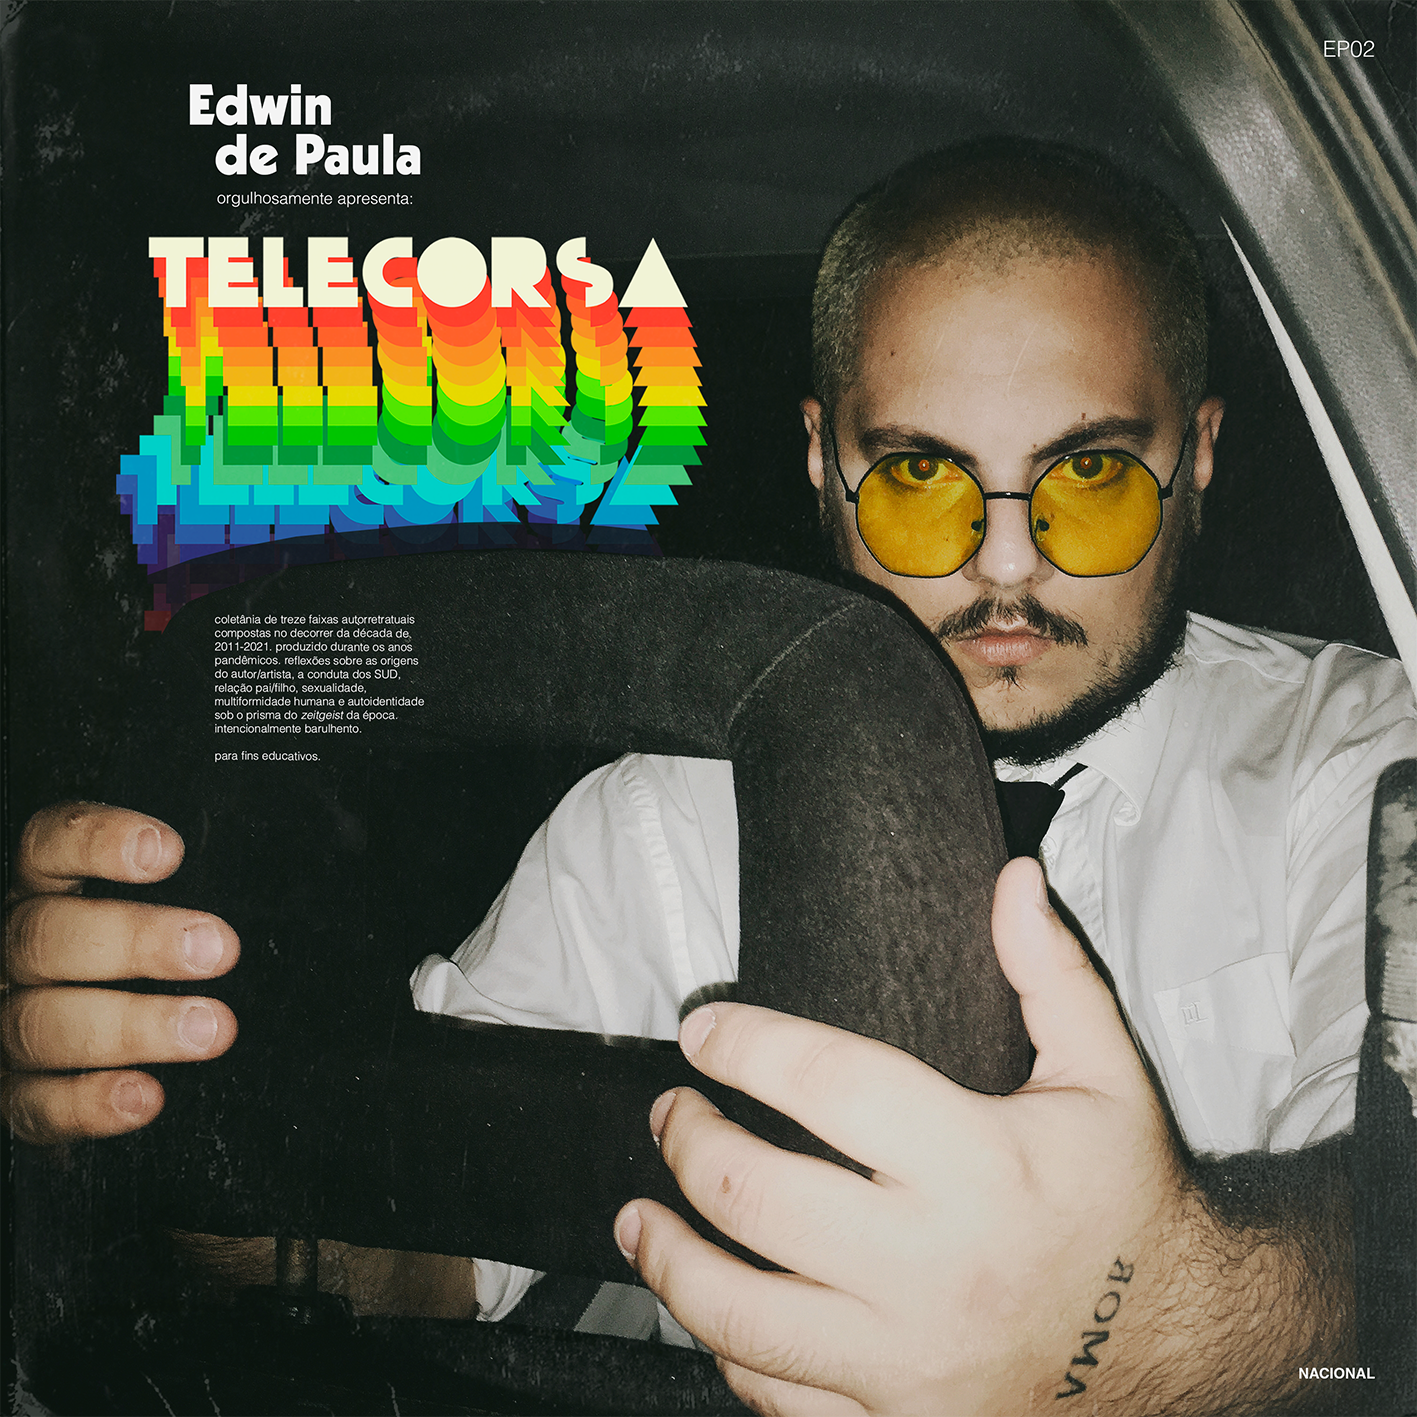 Capa do disco “Telecorsa”, com o autor Edwin de Paula dentro de um carro, usando camisa social branca, gravata preta e um óculos com as lentes redondas e alaranjadas.